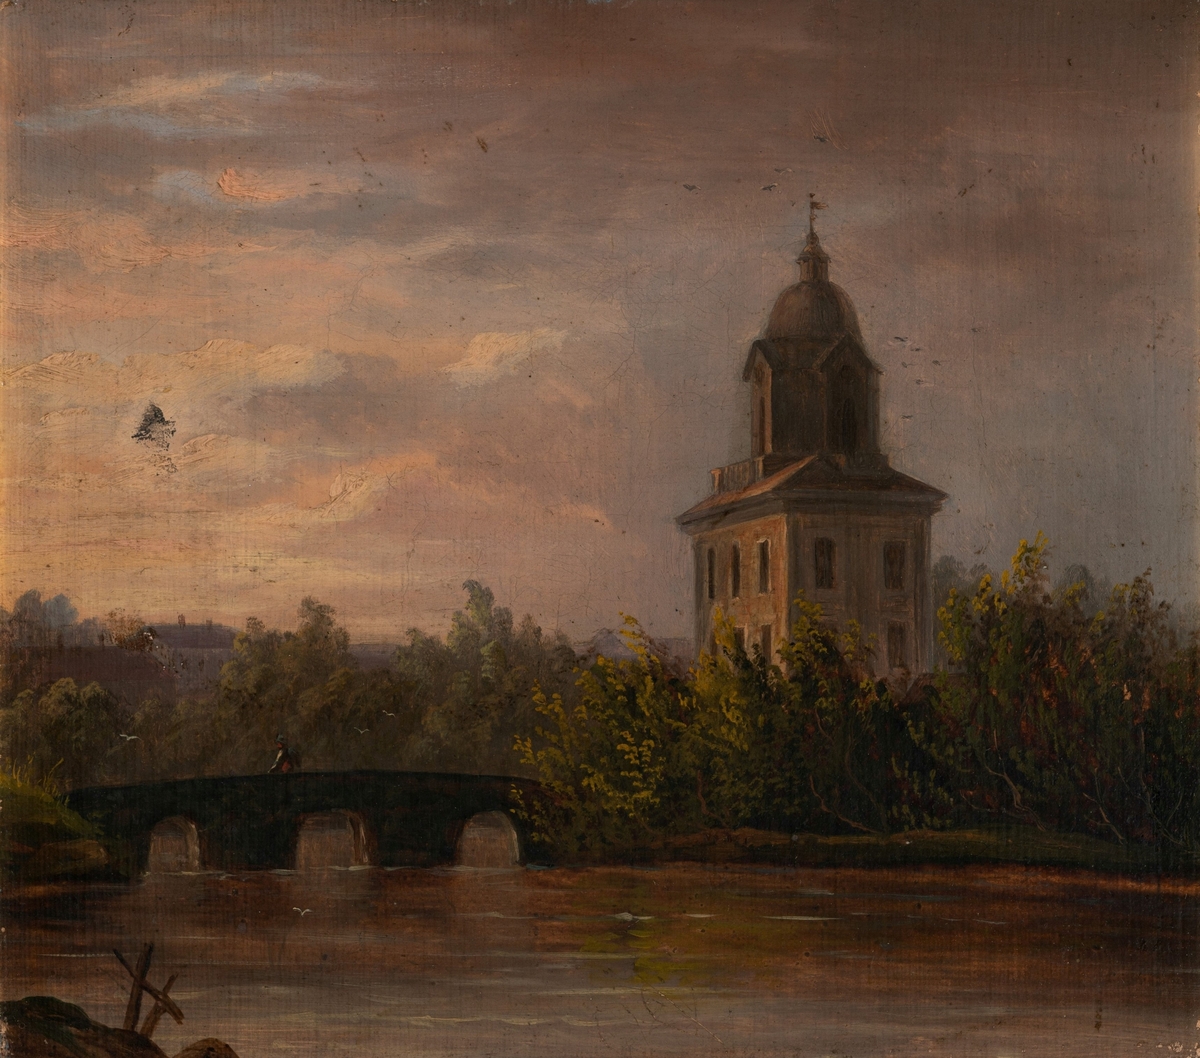 Kirketårn stikker opp blant løvtrær i en by. En bro i forgrunn krysser en elv. Kveldstid med rødlige skyer